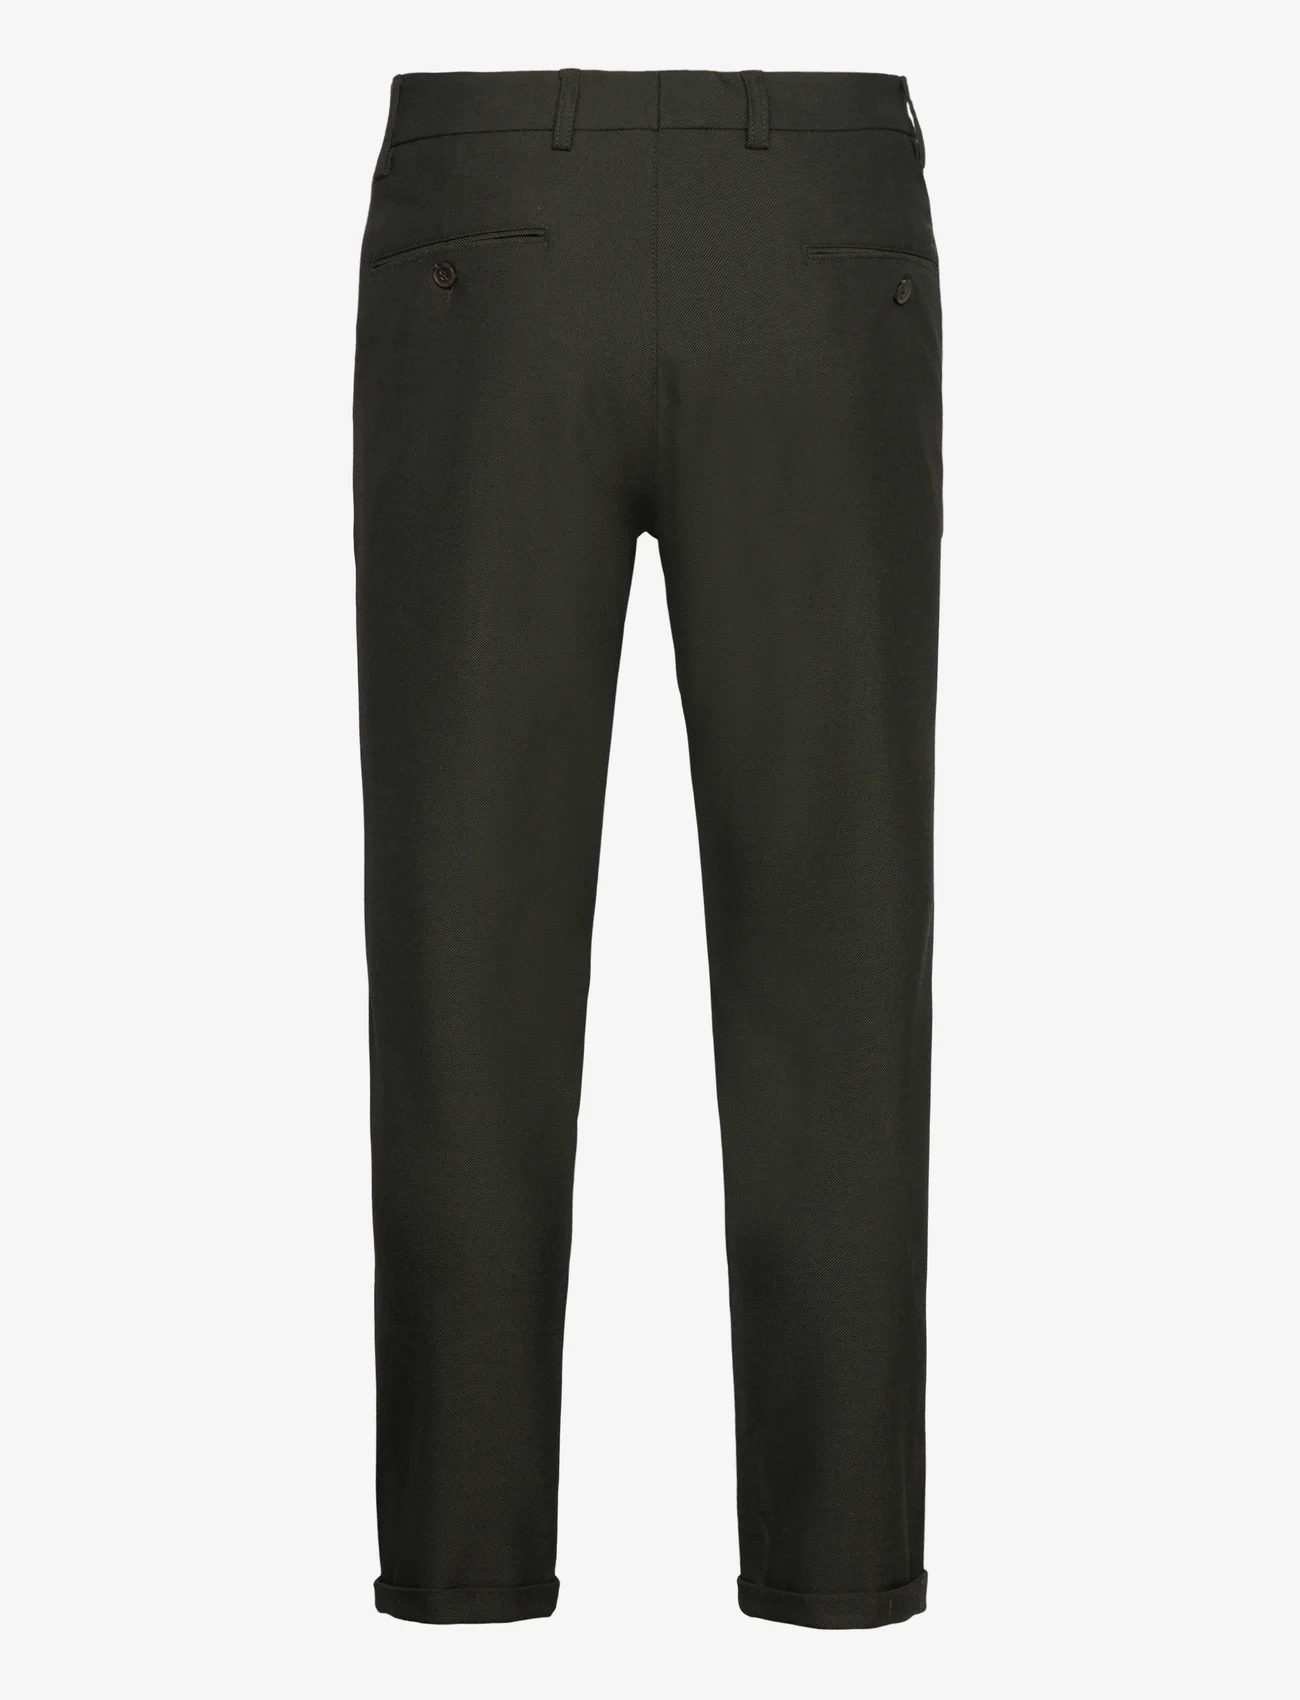 Les Deux - Como Suit Pants - Seasonal - kostiumo kelnės - deep forest/charcoal - 1